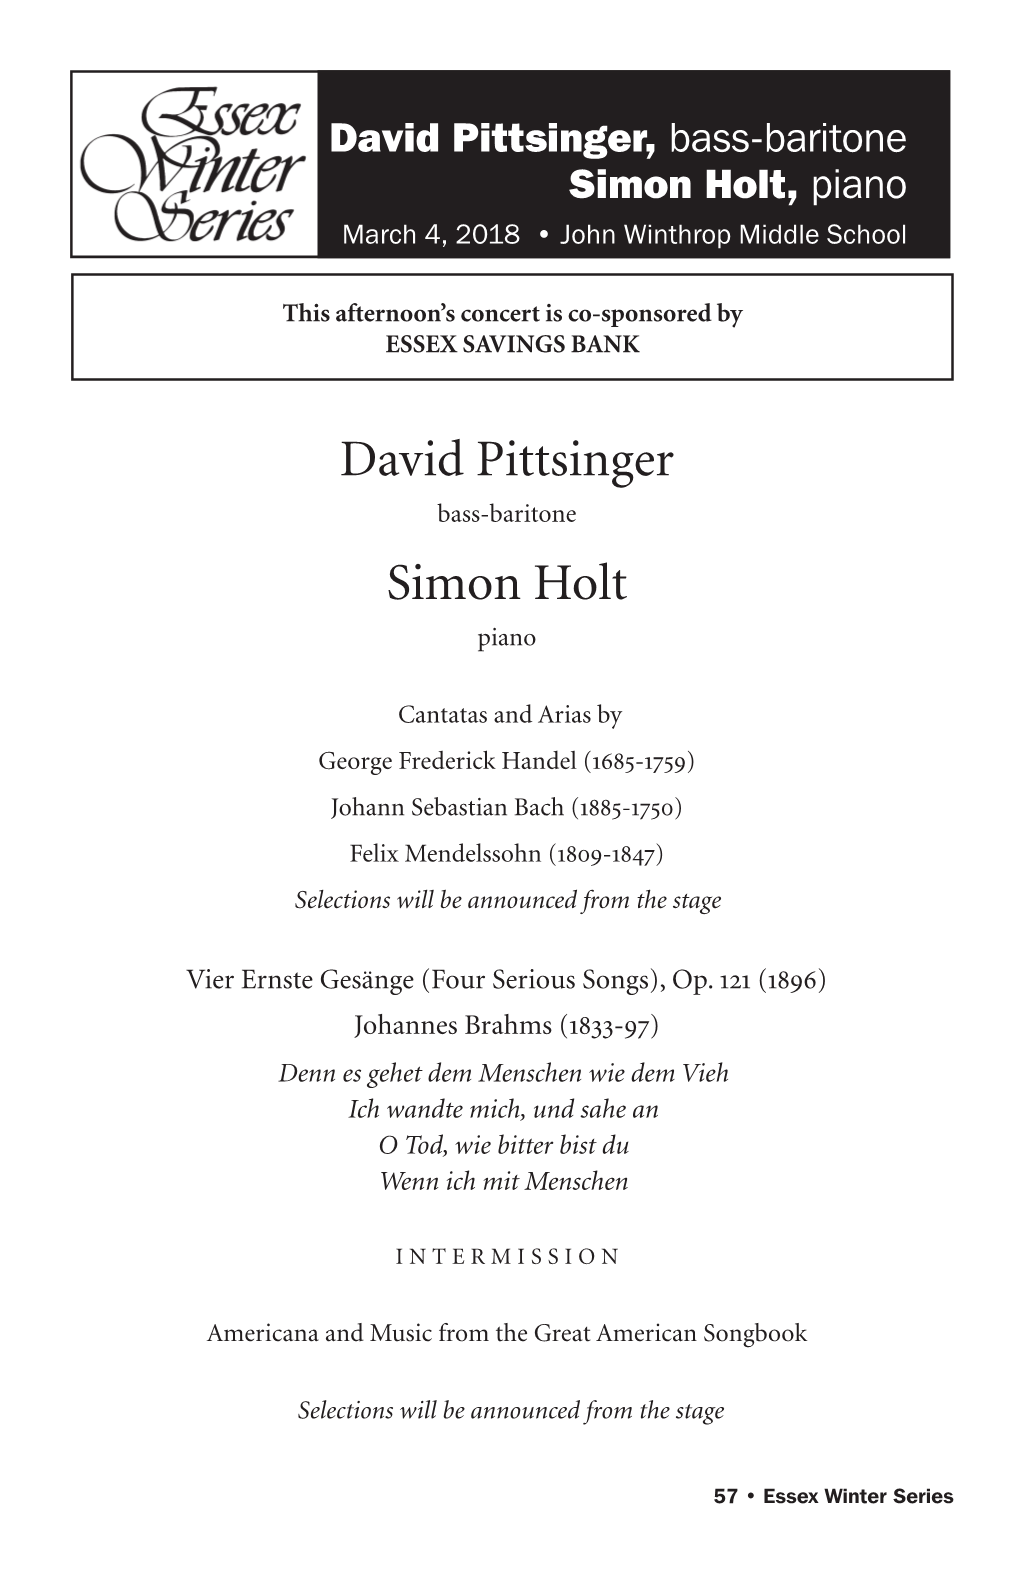 David Pittsinger Simon Holt